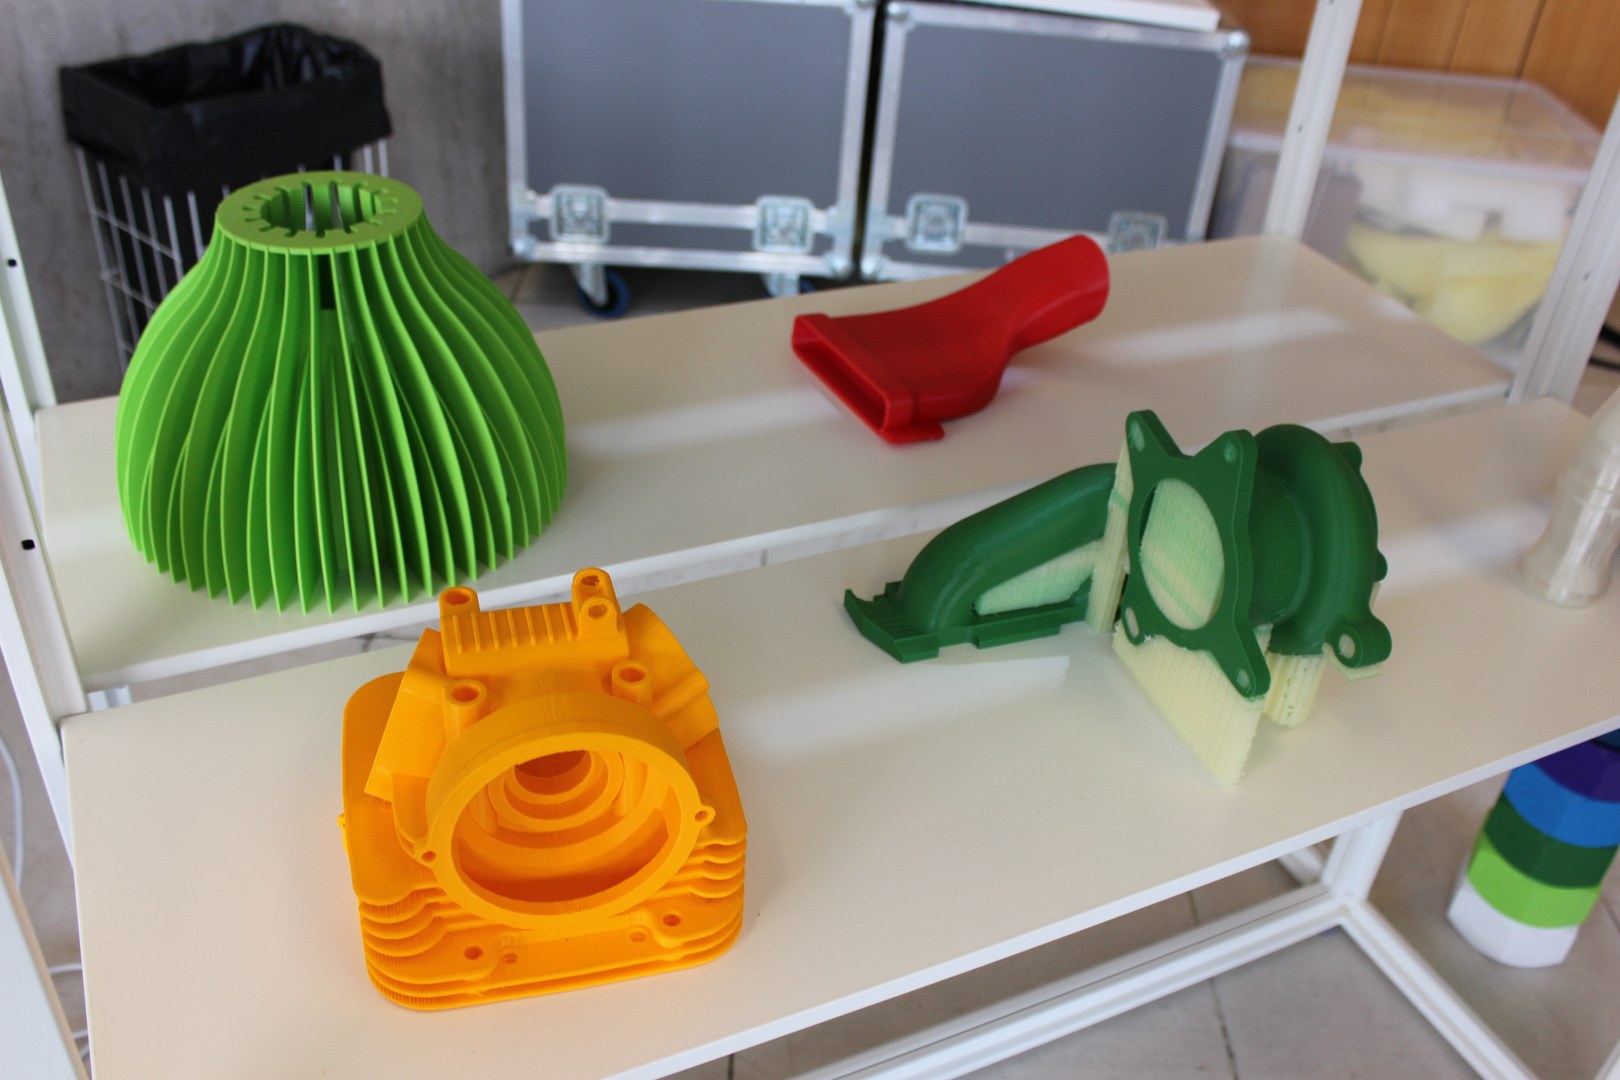  Je jasně vidět, že se 3D tisk nehodí jen na píšťalky, ale dá se s ním seriózně prototypovat.